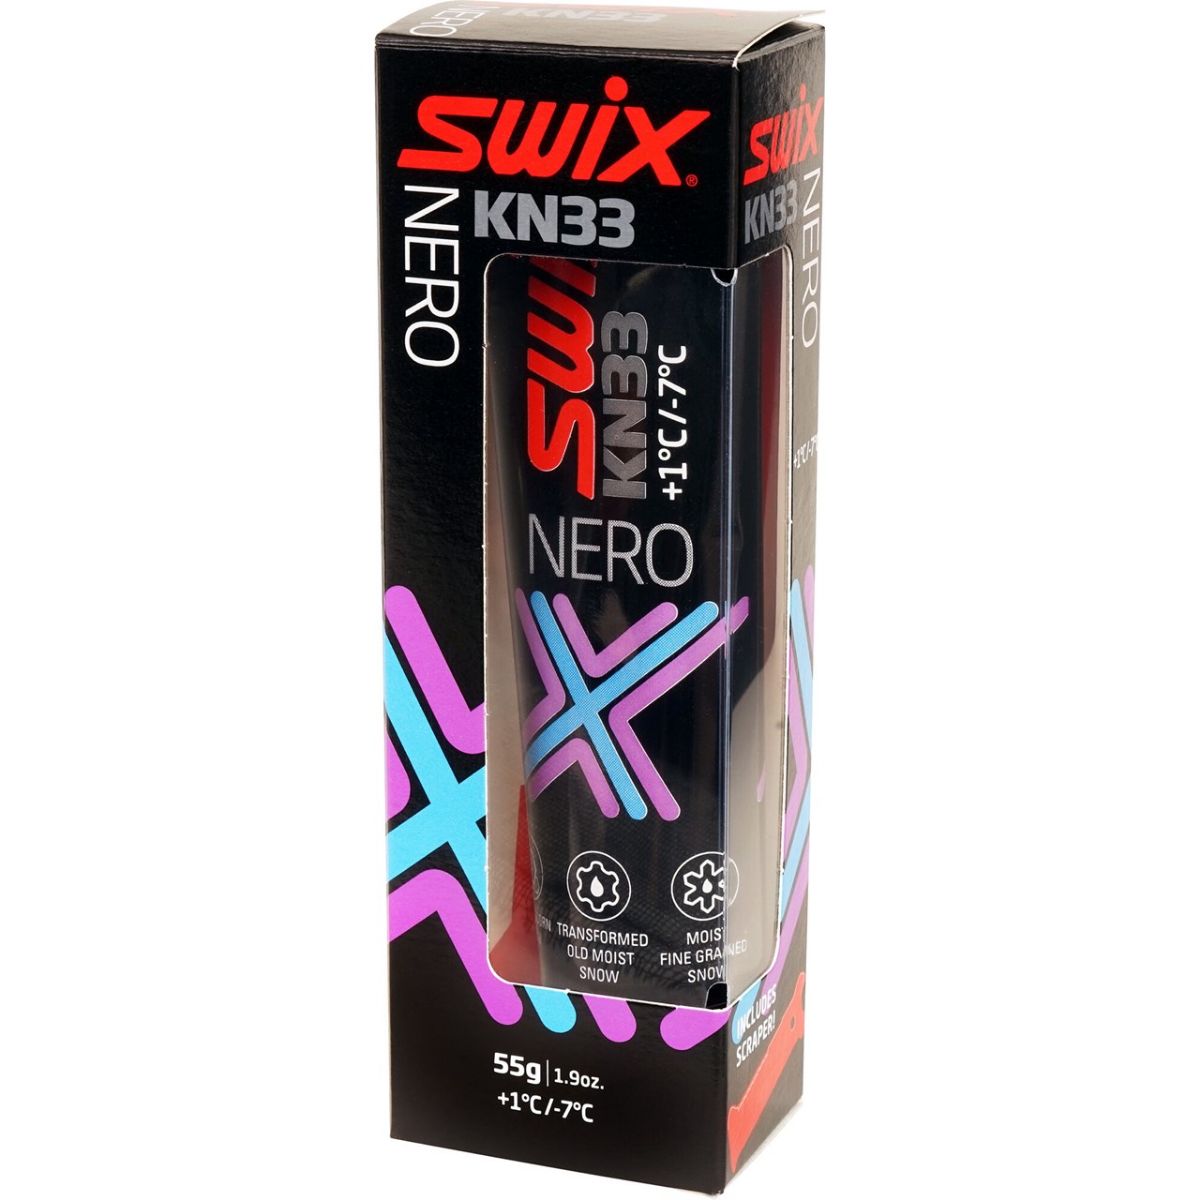 swix-kn33-klister-nero